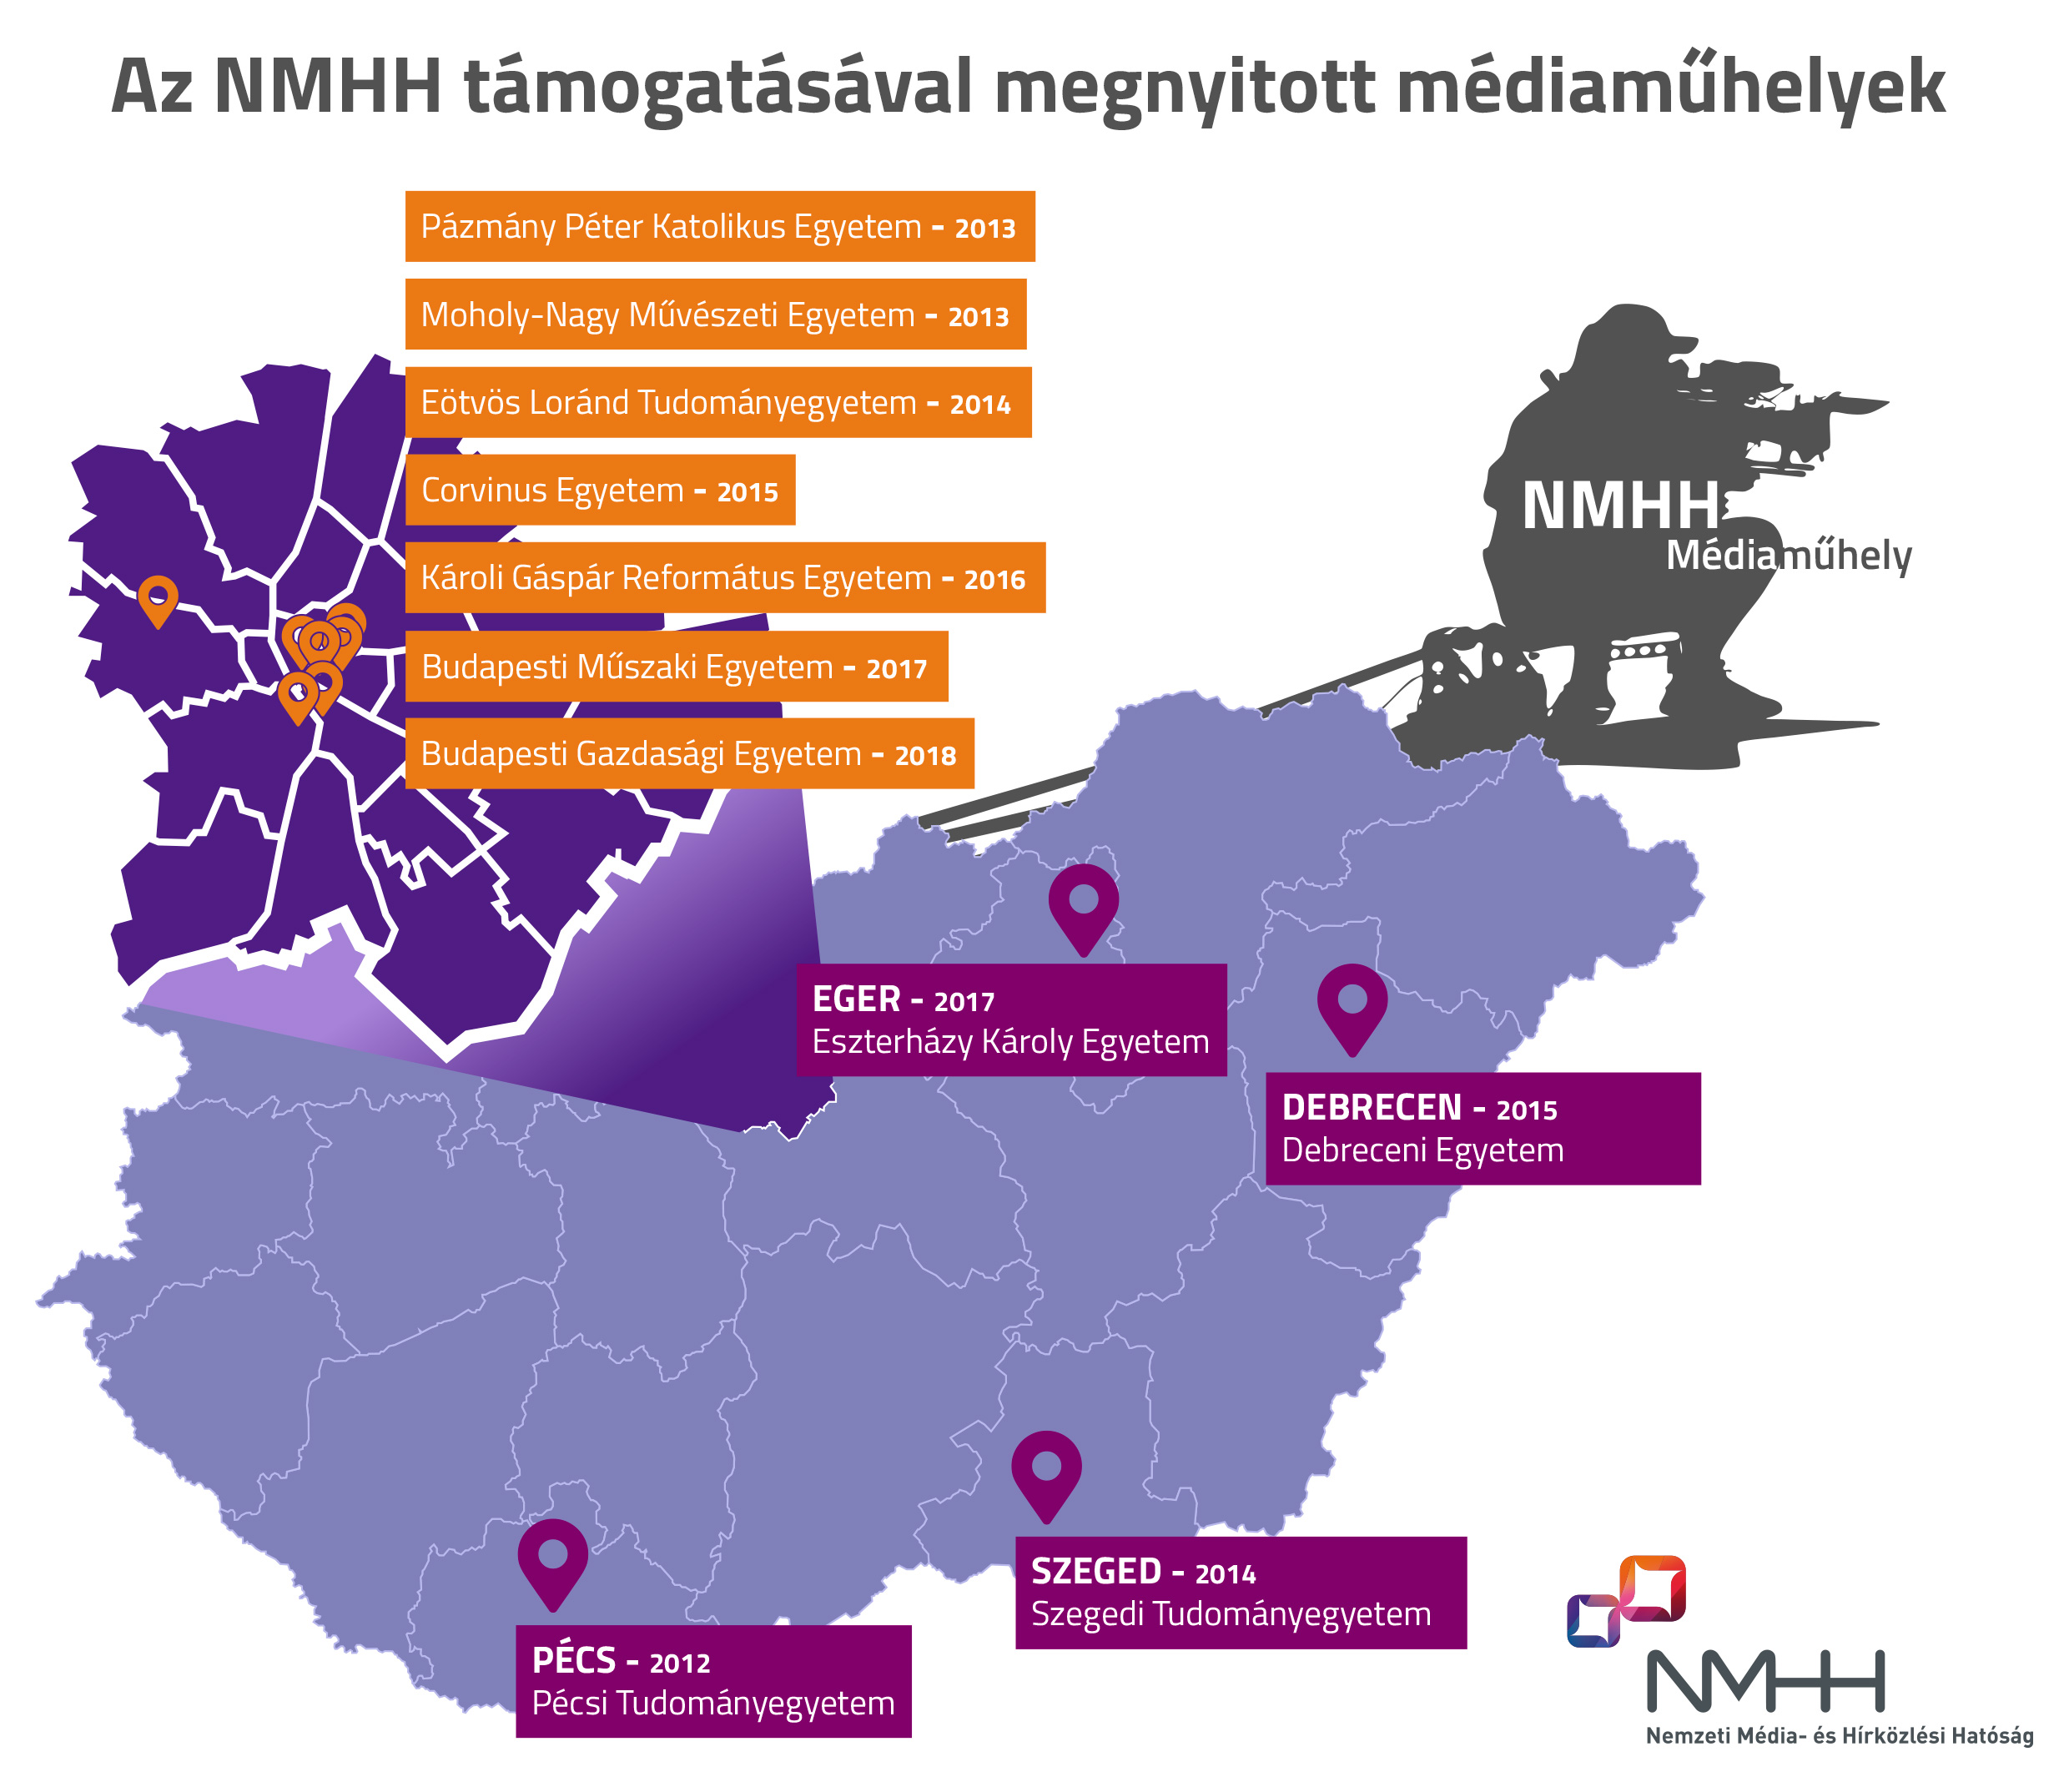 NMHH_mediamuhelyek_map